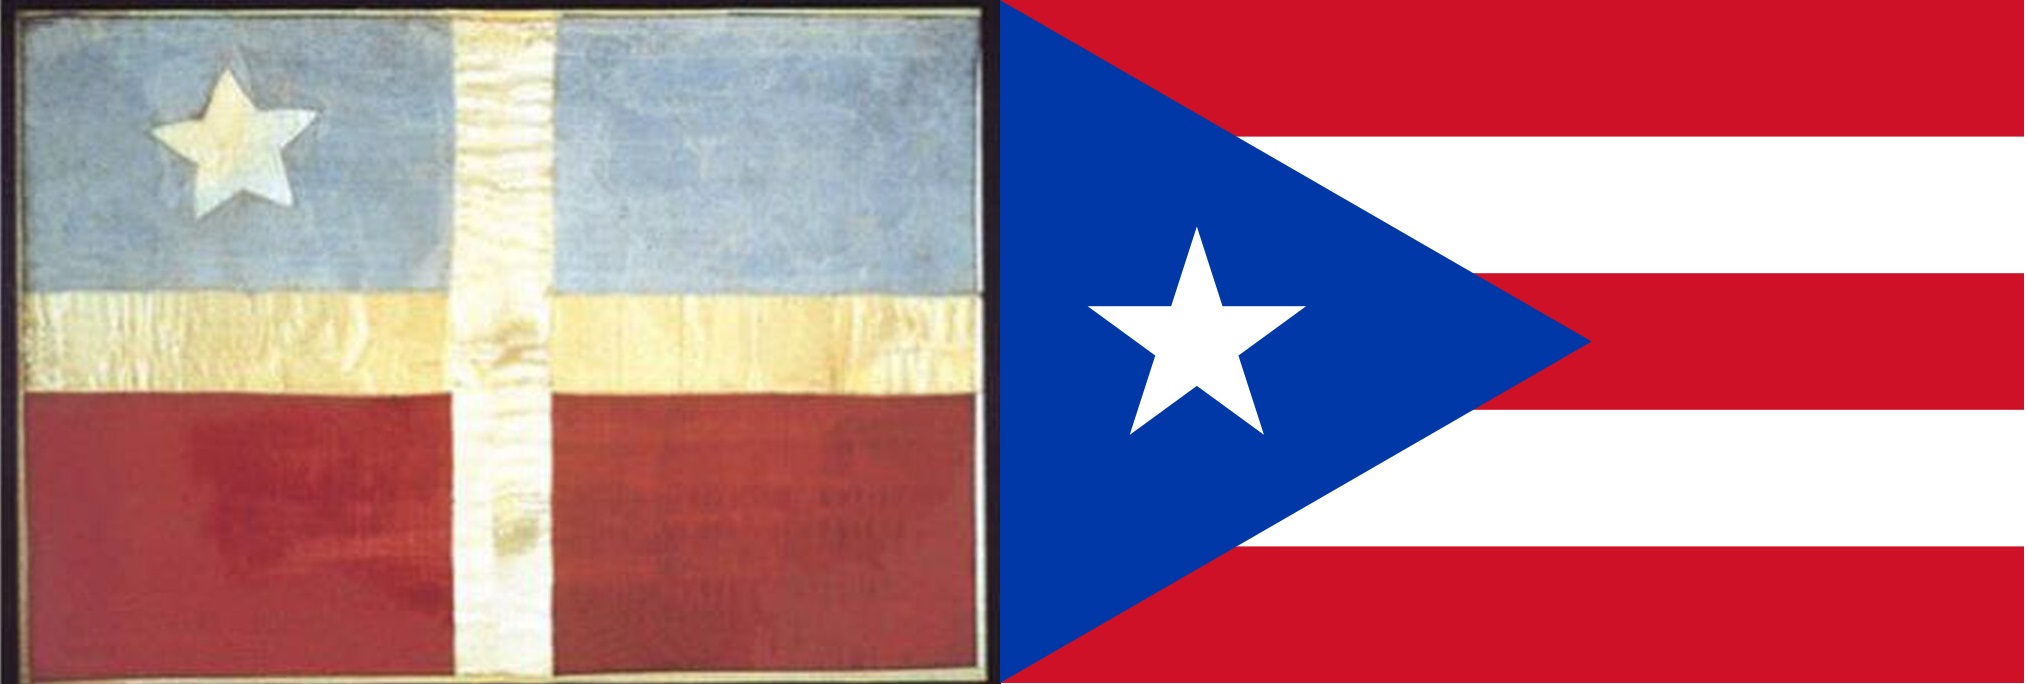 De vlag van de Grito de Lares en de huidige vlag